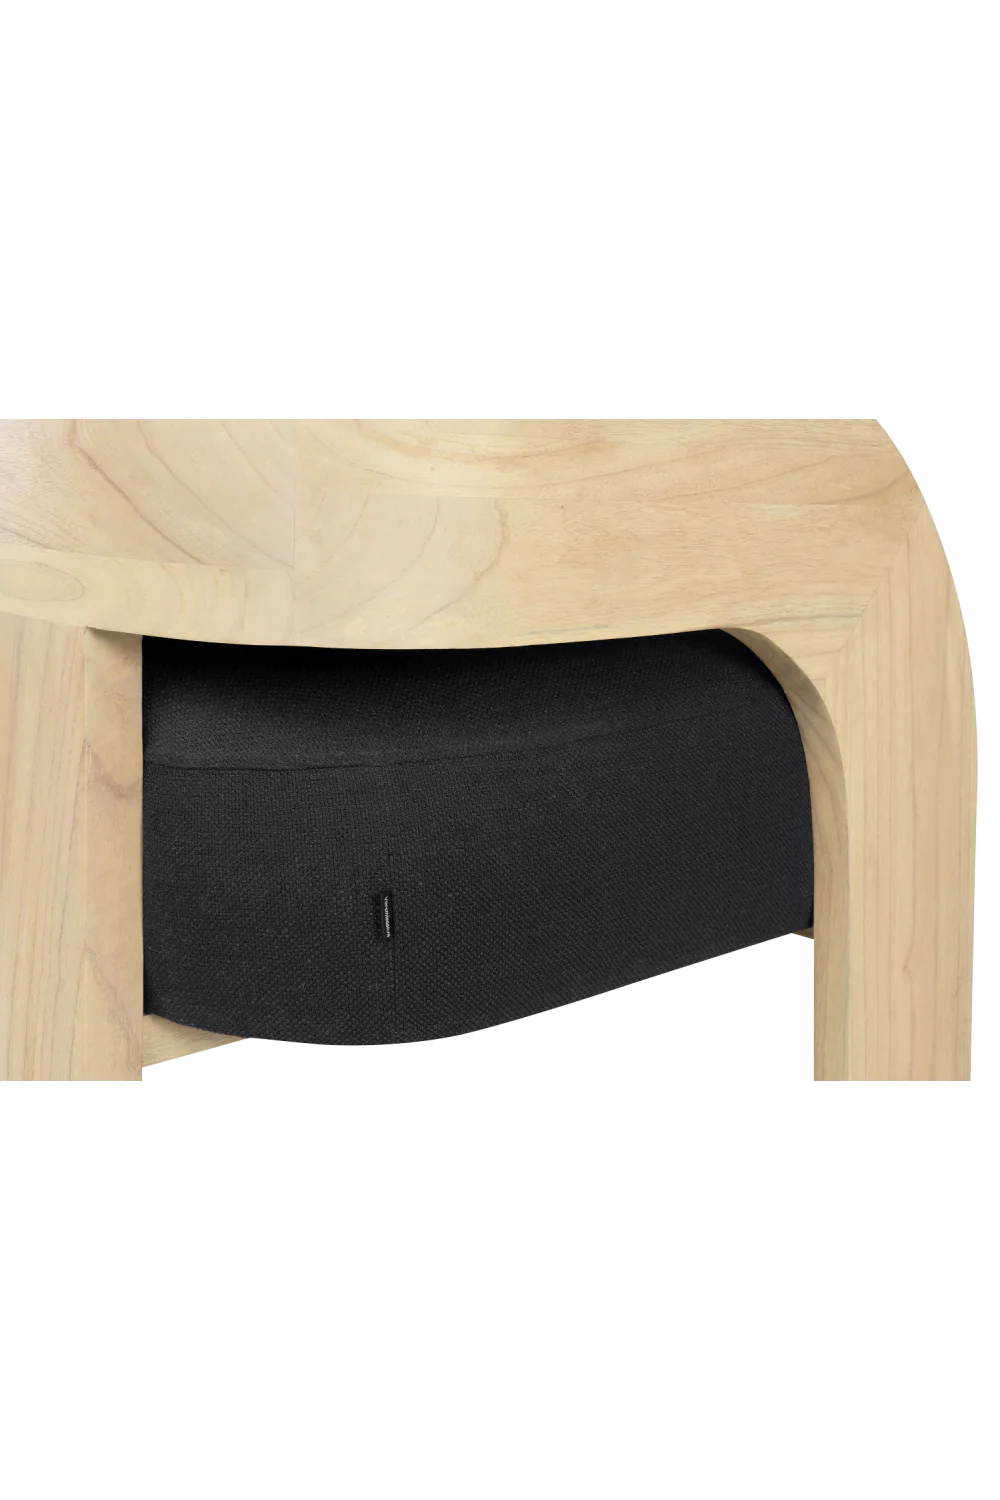 Fauteuil design bois minimaliste